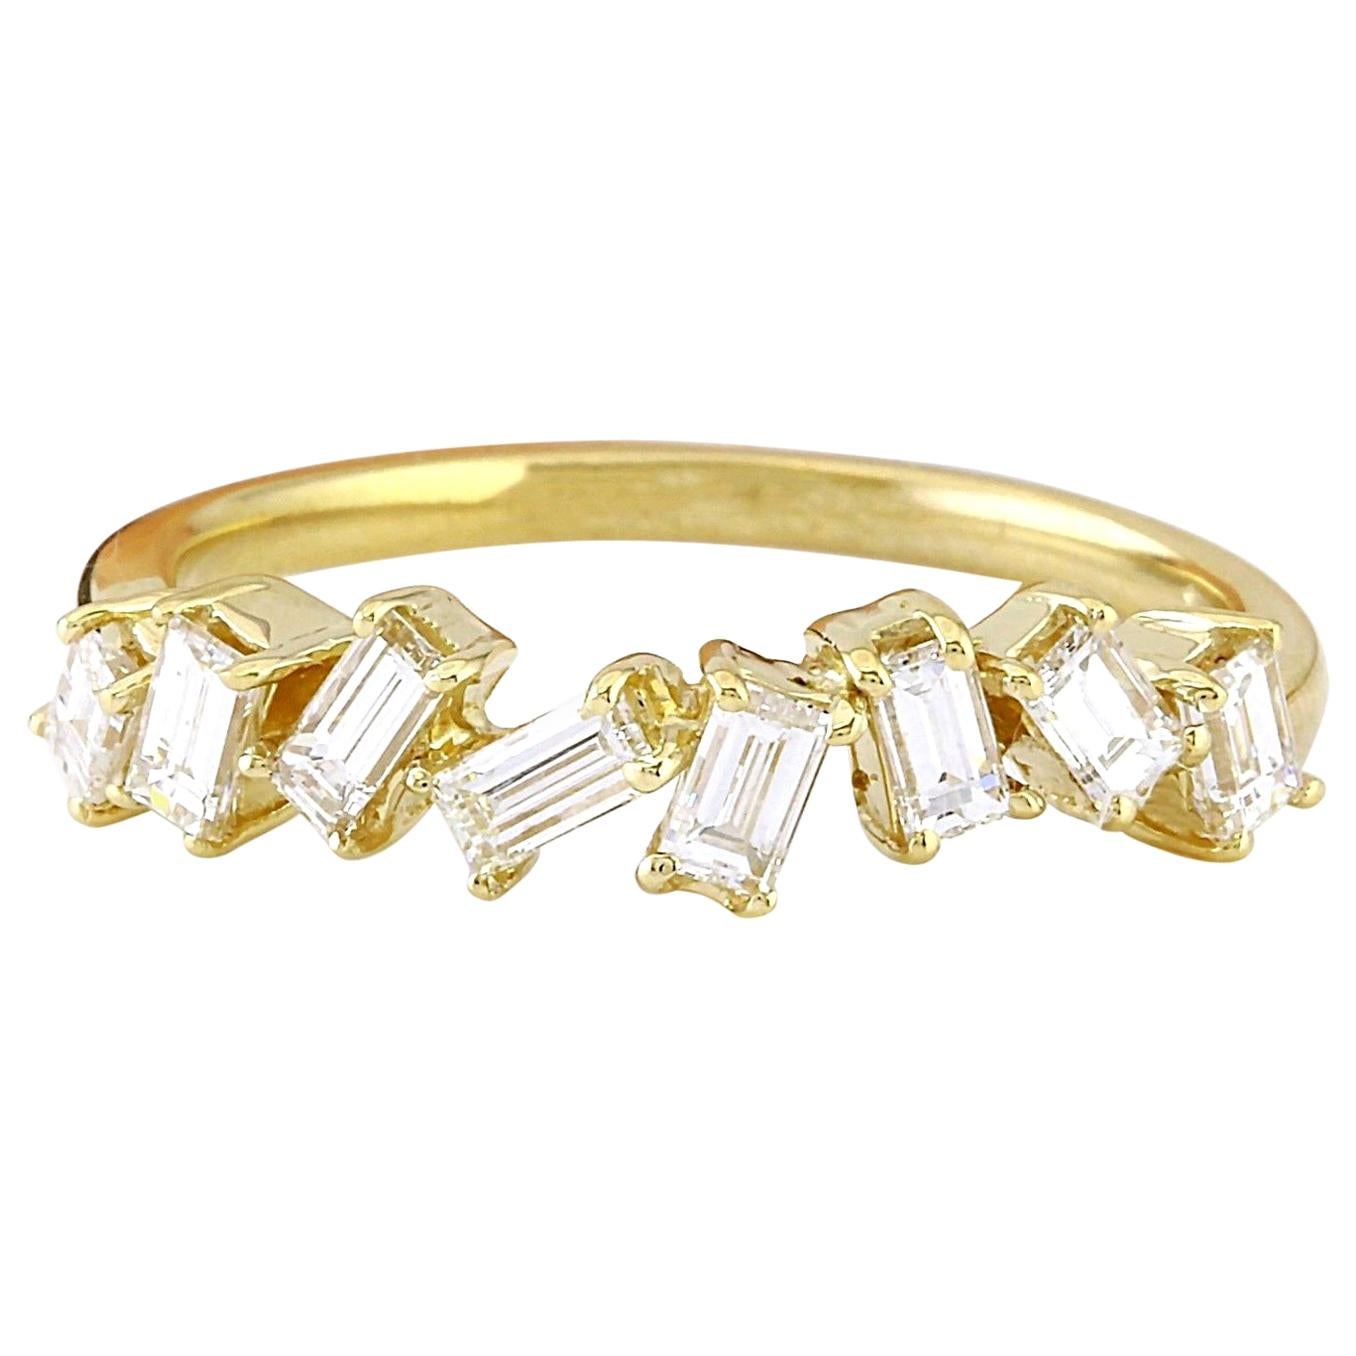 0.75 Carat Natural Diamond Ring In 14 Karat Solid Yellow Gold 